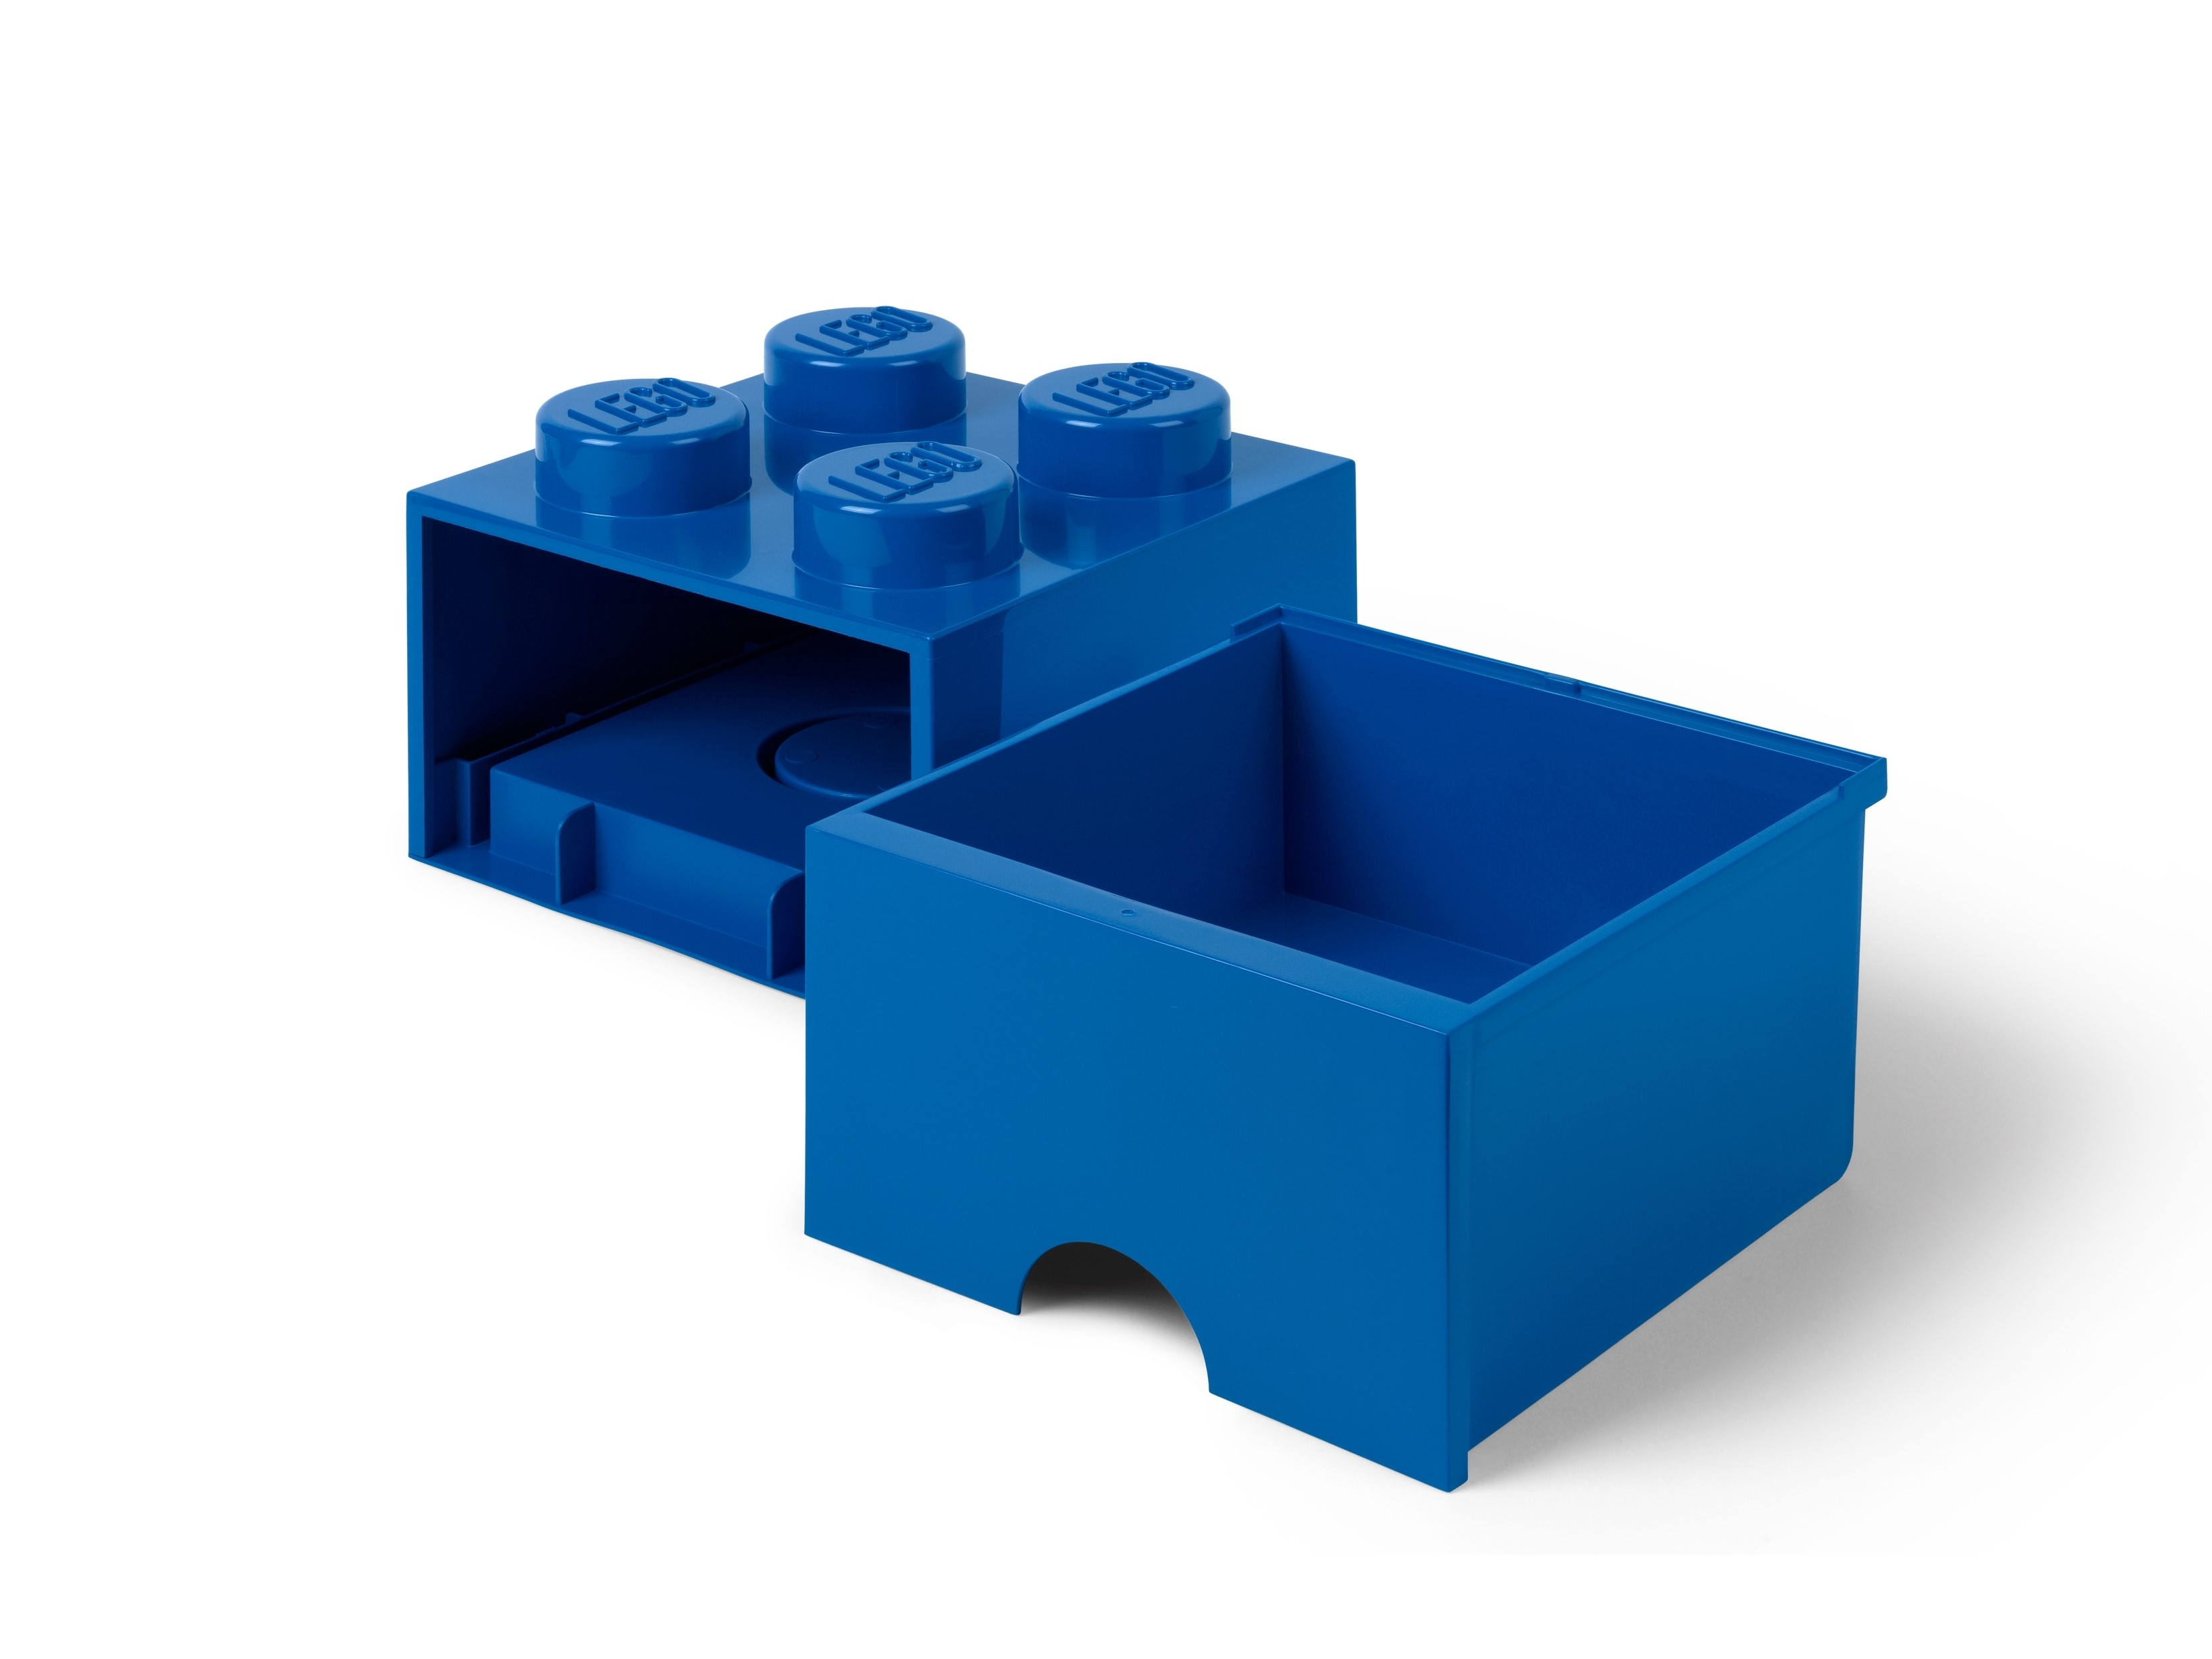 LEGO Rangements 5007279 pas cher, Boîte de tri – bleu